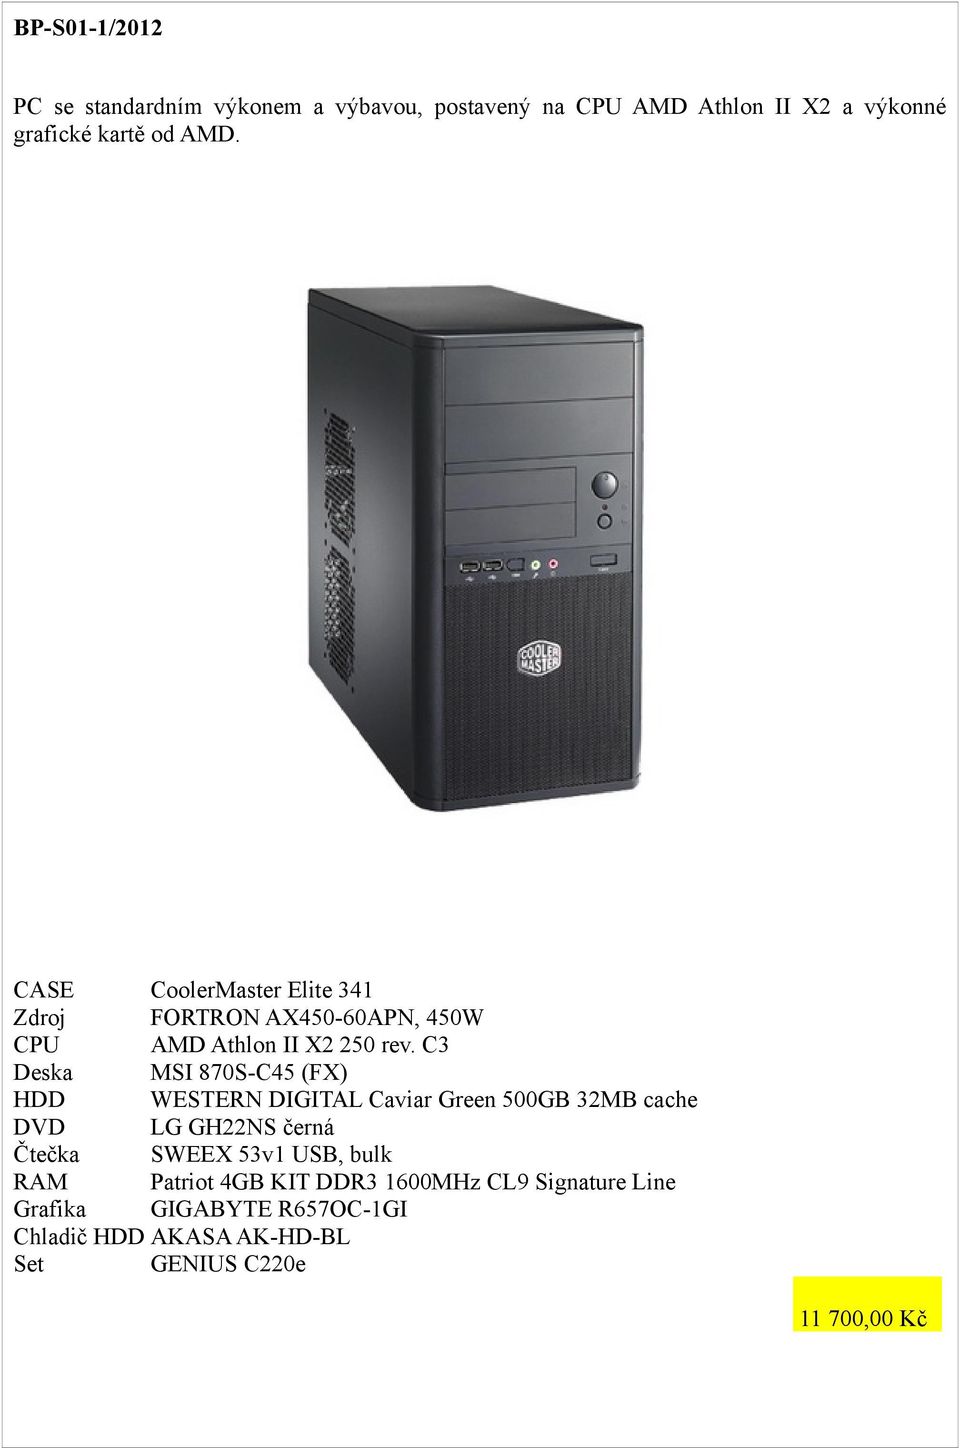 C3 MSI 870S-C45 (FX) HDD WESTERN DIGITAL Caviar Green 500GB 32MB cache Patriot 4GB KIT DDR3